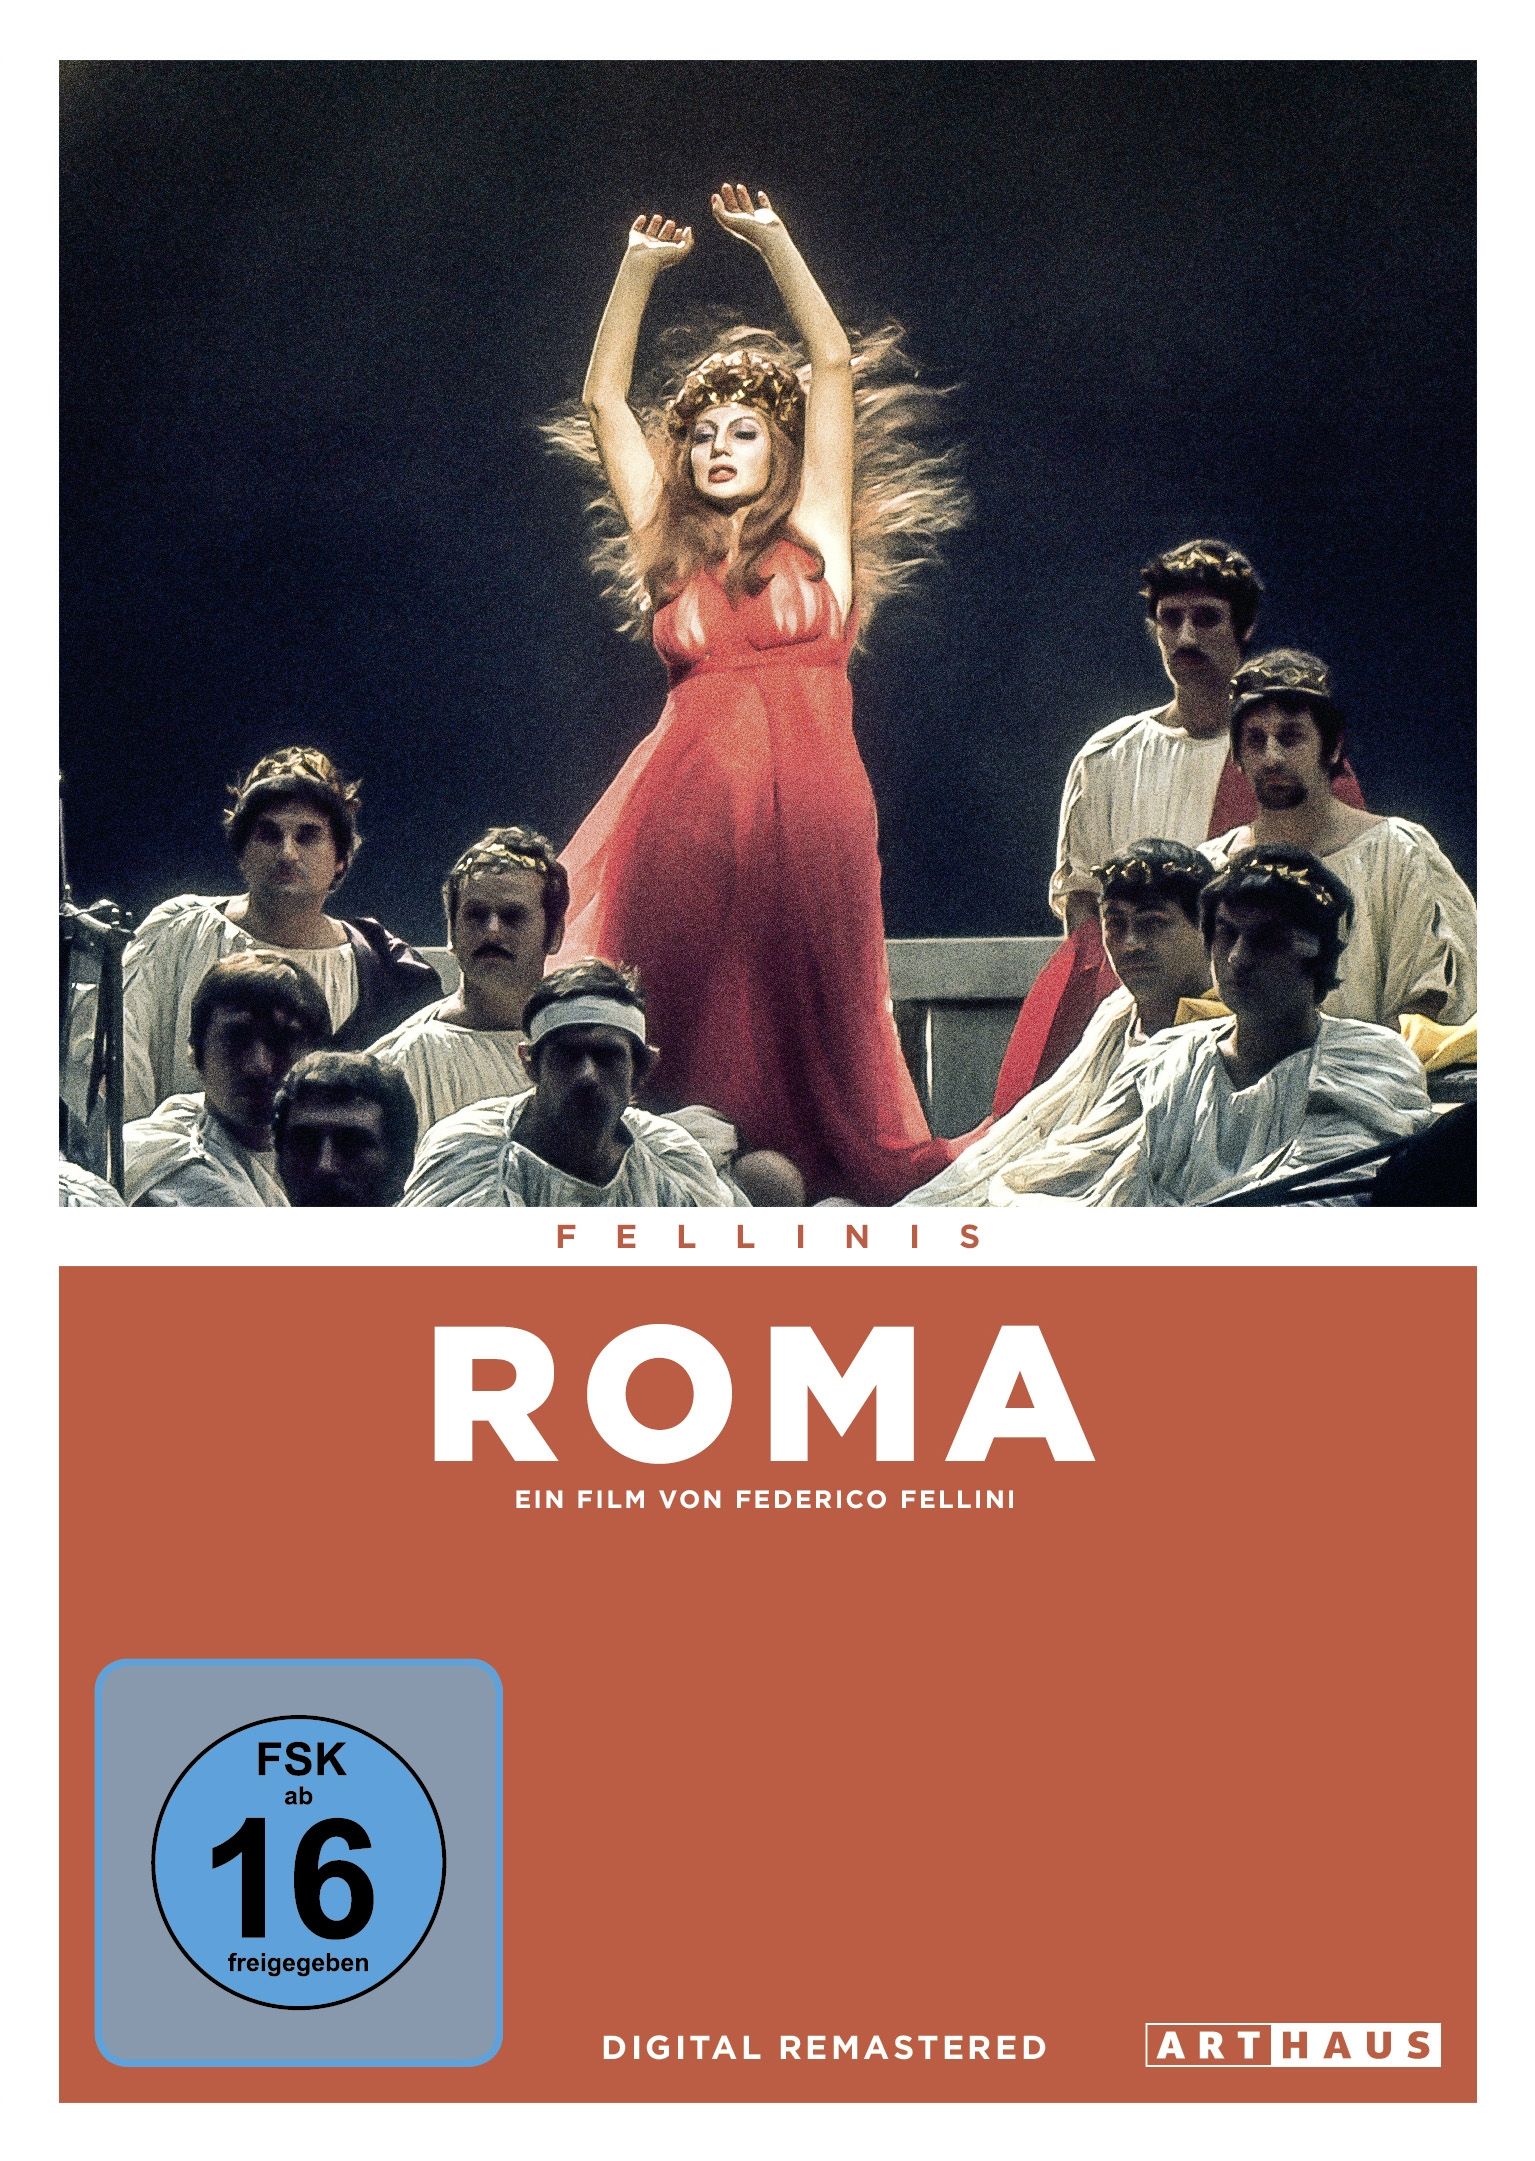 Fellinis Roma (Digital Remastered)